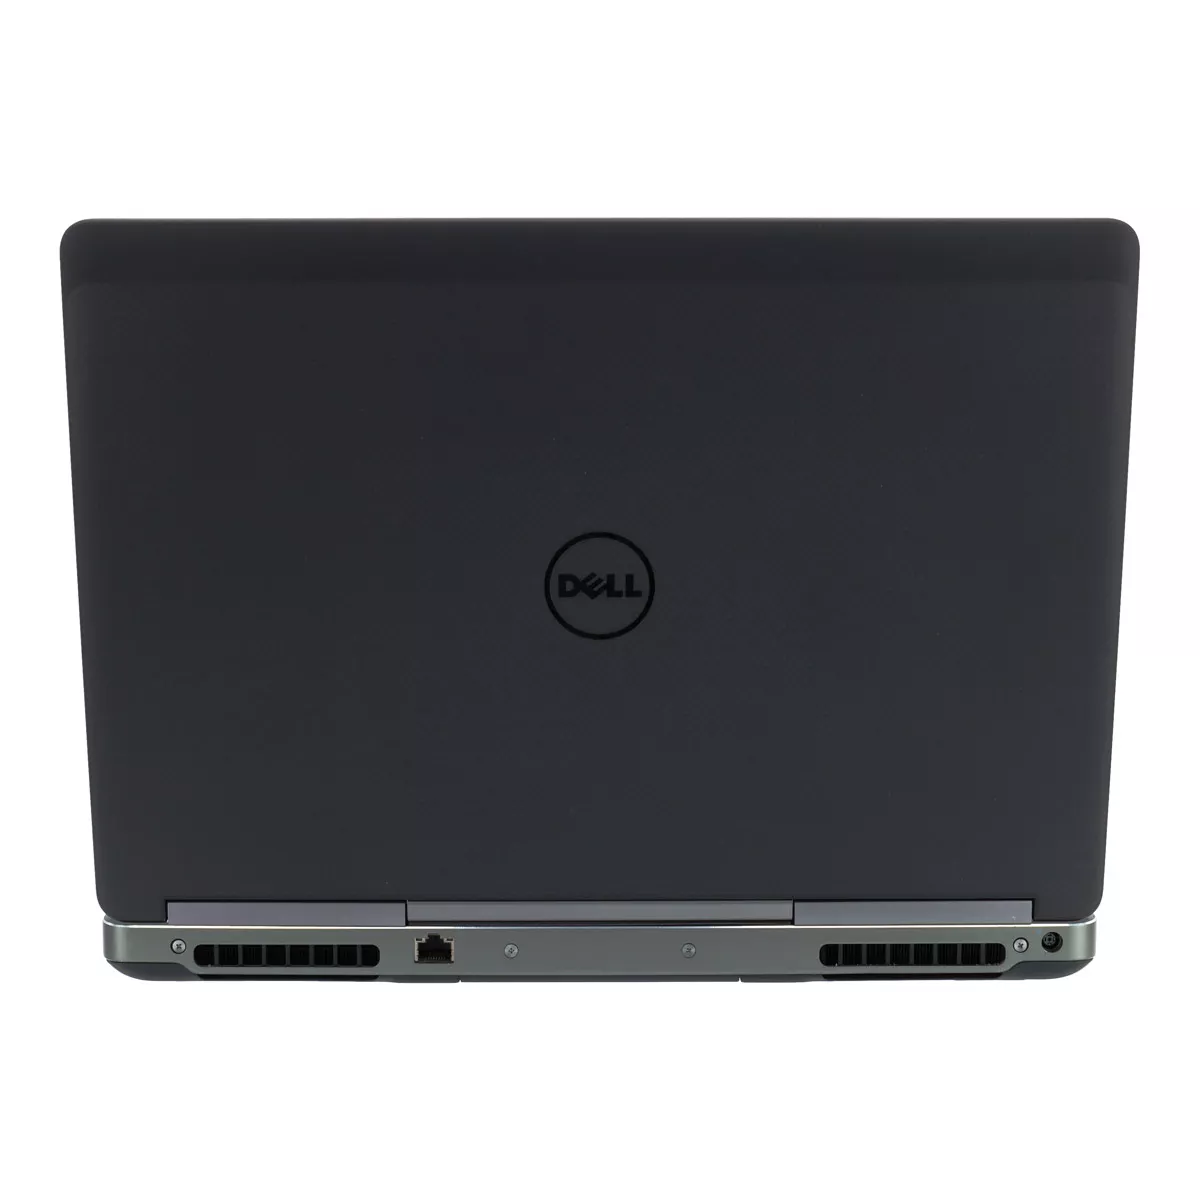 Dell Precision 7520 Quad Core i7 6820HQ nVidia Quadro M2200 Full-HD 16 GB 500 GB SSD Webcam B-Ware